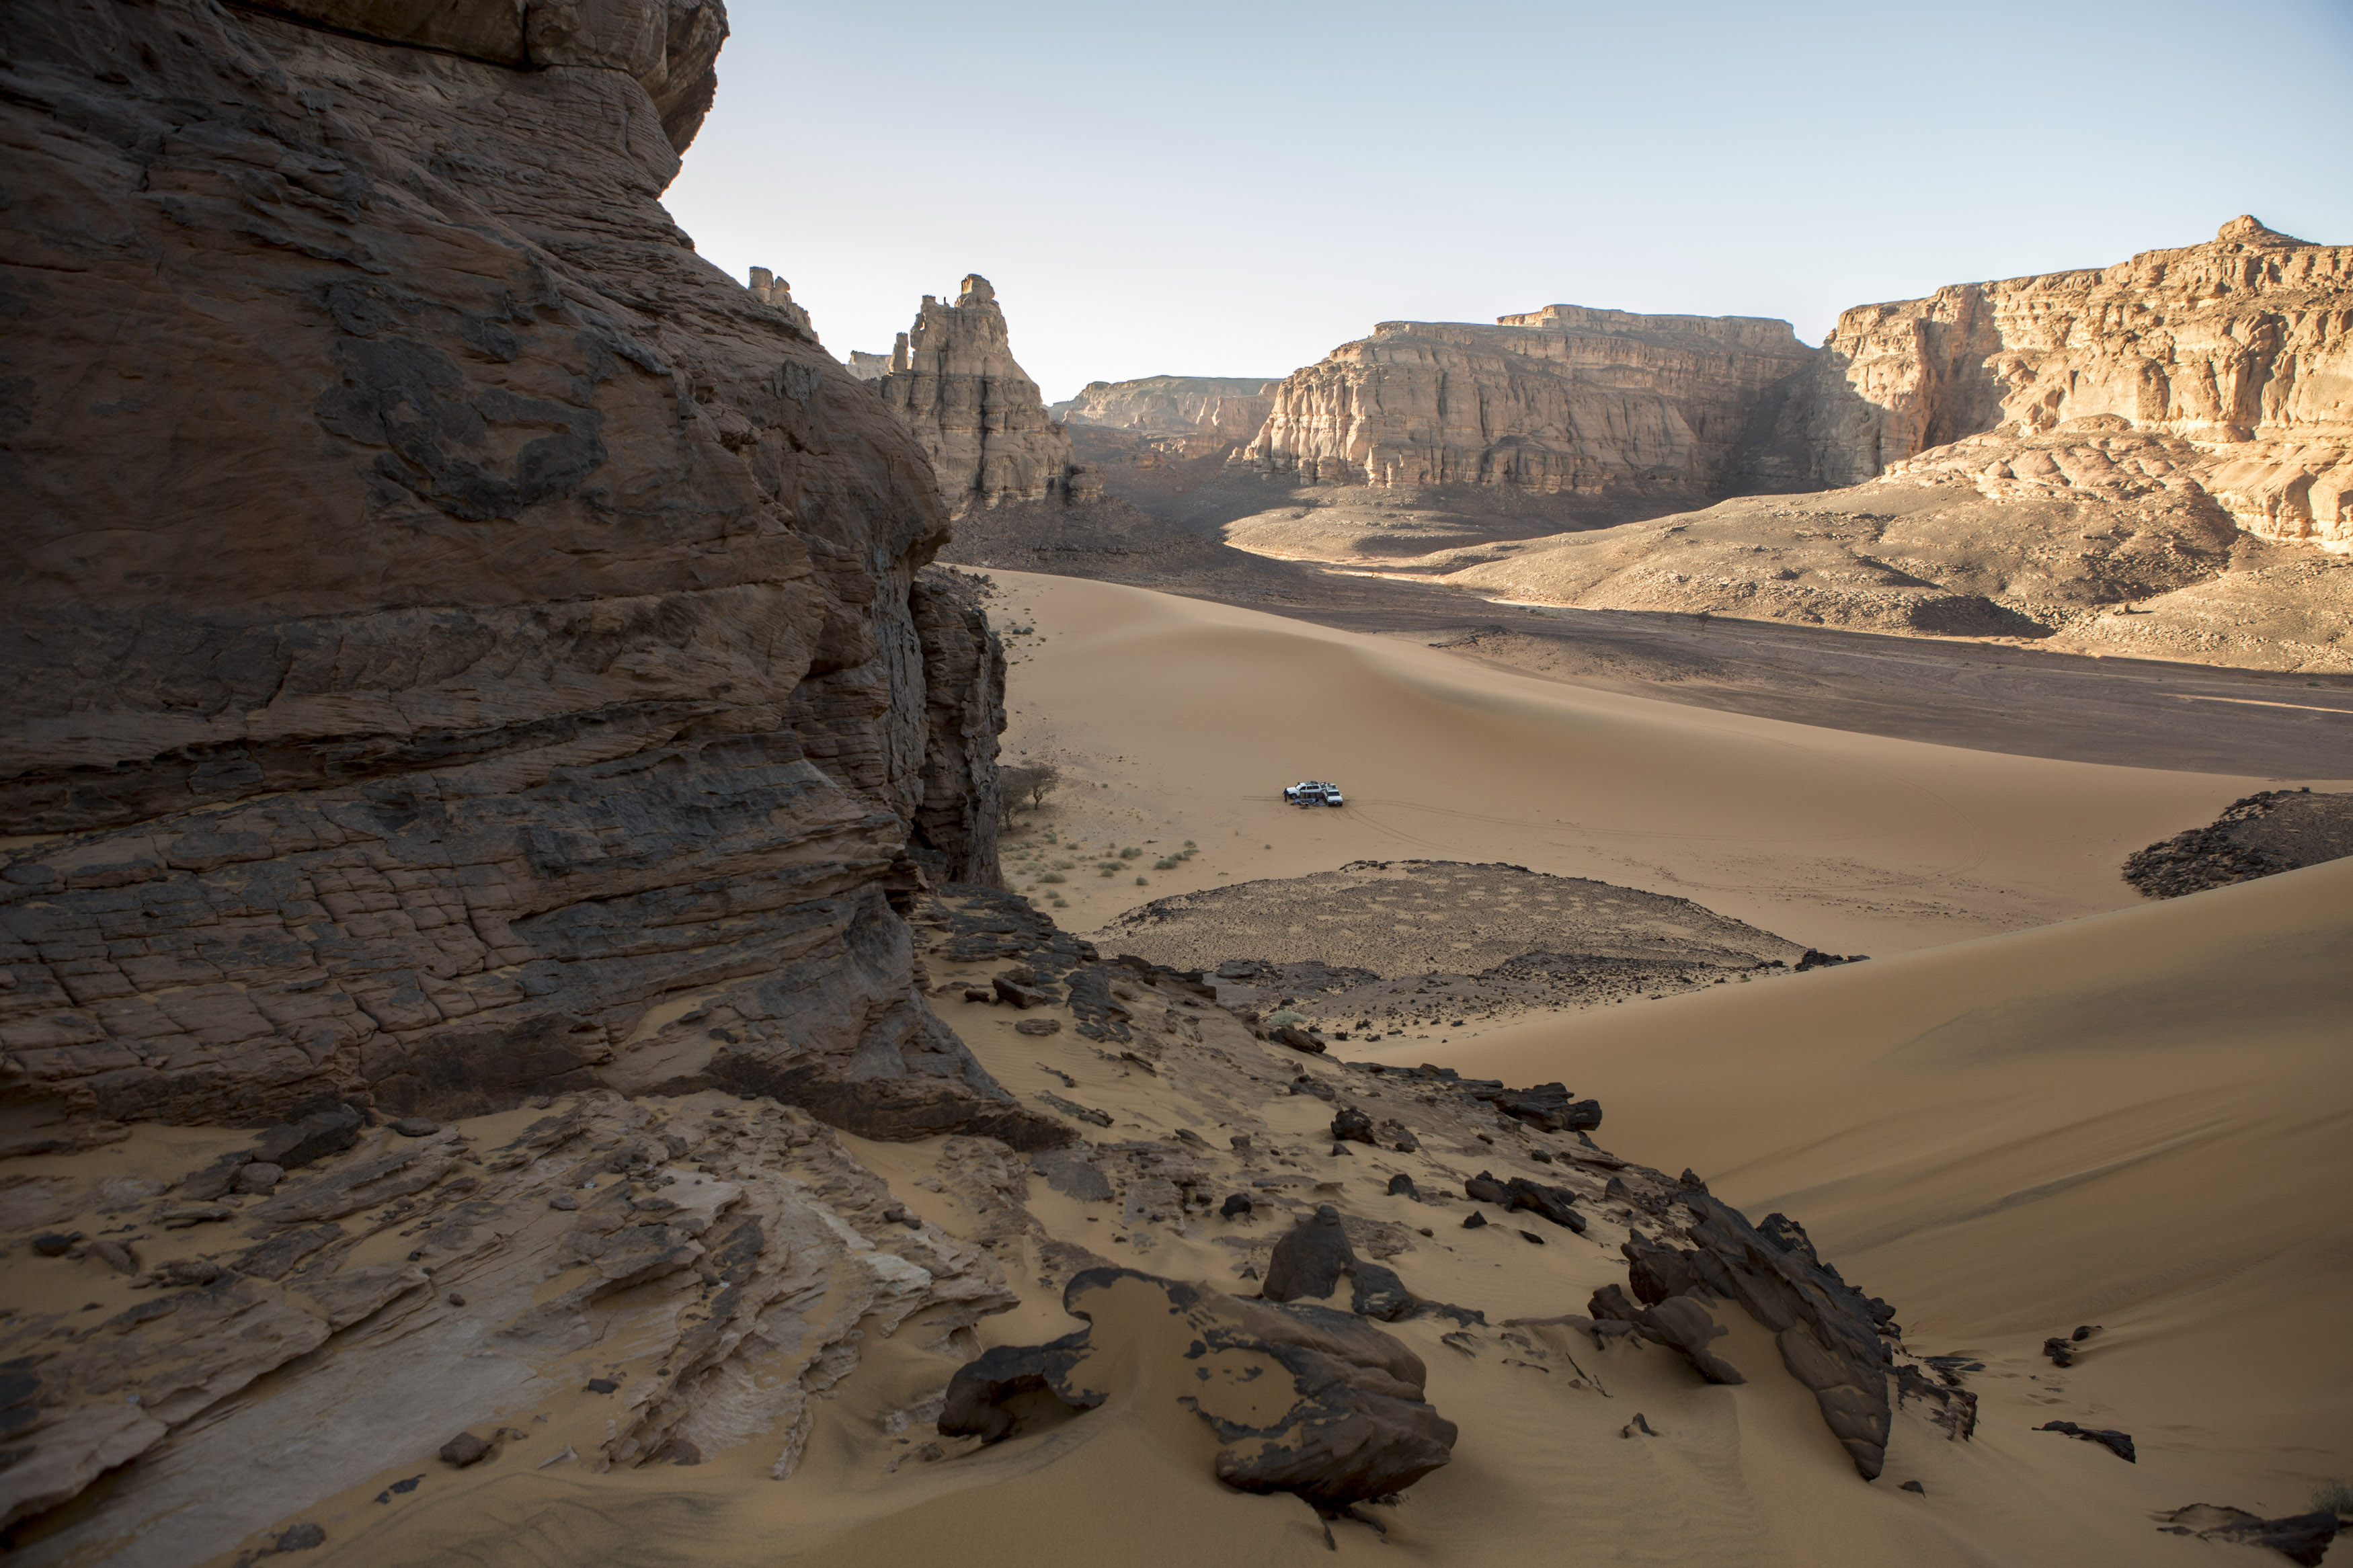 Two crews with their 4x4 vehicles are preparing for the evening bivouac in the Tadrart. La Tadrart (200 km southeast)
The Tadrart (200 km southeast of Djanet) is located in the south of the Tassili N'Ajjer National Park and is part of one of the most beautiful desert in the world but above all the central Sahara.
From huge canyons to cliffs carved with rocky peaks of various shapes mix with dunes of colored sand with yellow and red reflections. The Tadrart, Algeria-February 5, 2017. 
Deux équipages avec leur véhicules 4x4 se préparent pour le bivouac du soir dans la Tadrart. La Tadrart (200 km au sud-est de Djanet) se situe dans le sud du Parc National du Tassili N'Ajjer et il fait partie d’un des plus beau désert au monde mais avant tout du Sahara central. 
D’immenses canyons aux falaises sculptées avec de pitons rocheux aux formes les plus diverses  se mélangent avec des dunes de sable coloré aux reflets jaune et rouge. La Tadrart,, Algérie-5 février 2017.